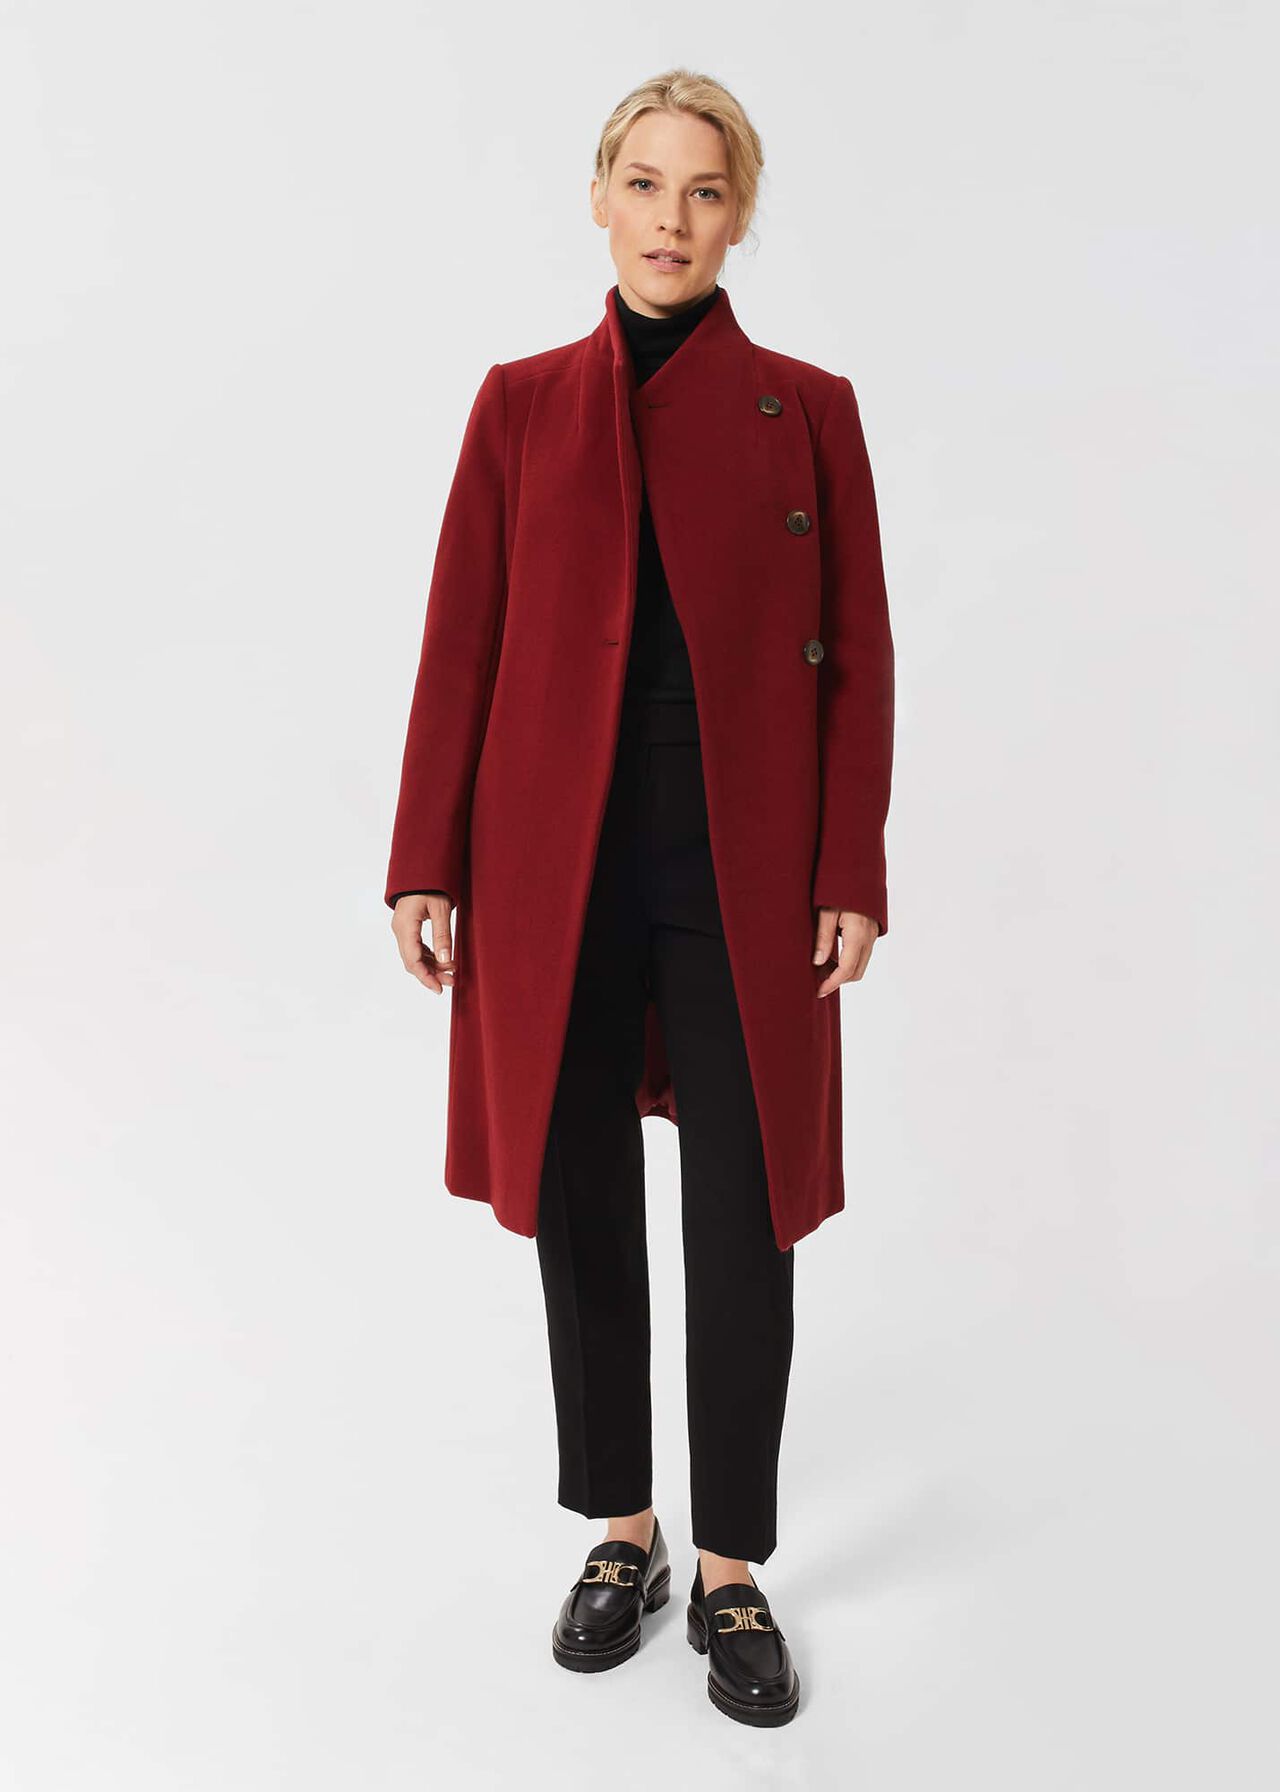 Petite Asher Coat, Vermillion Red, hi-res